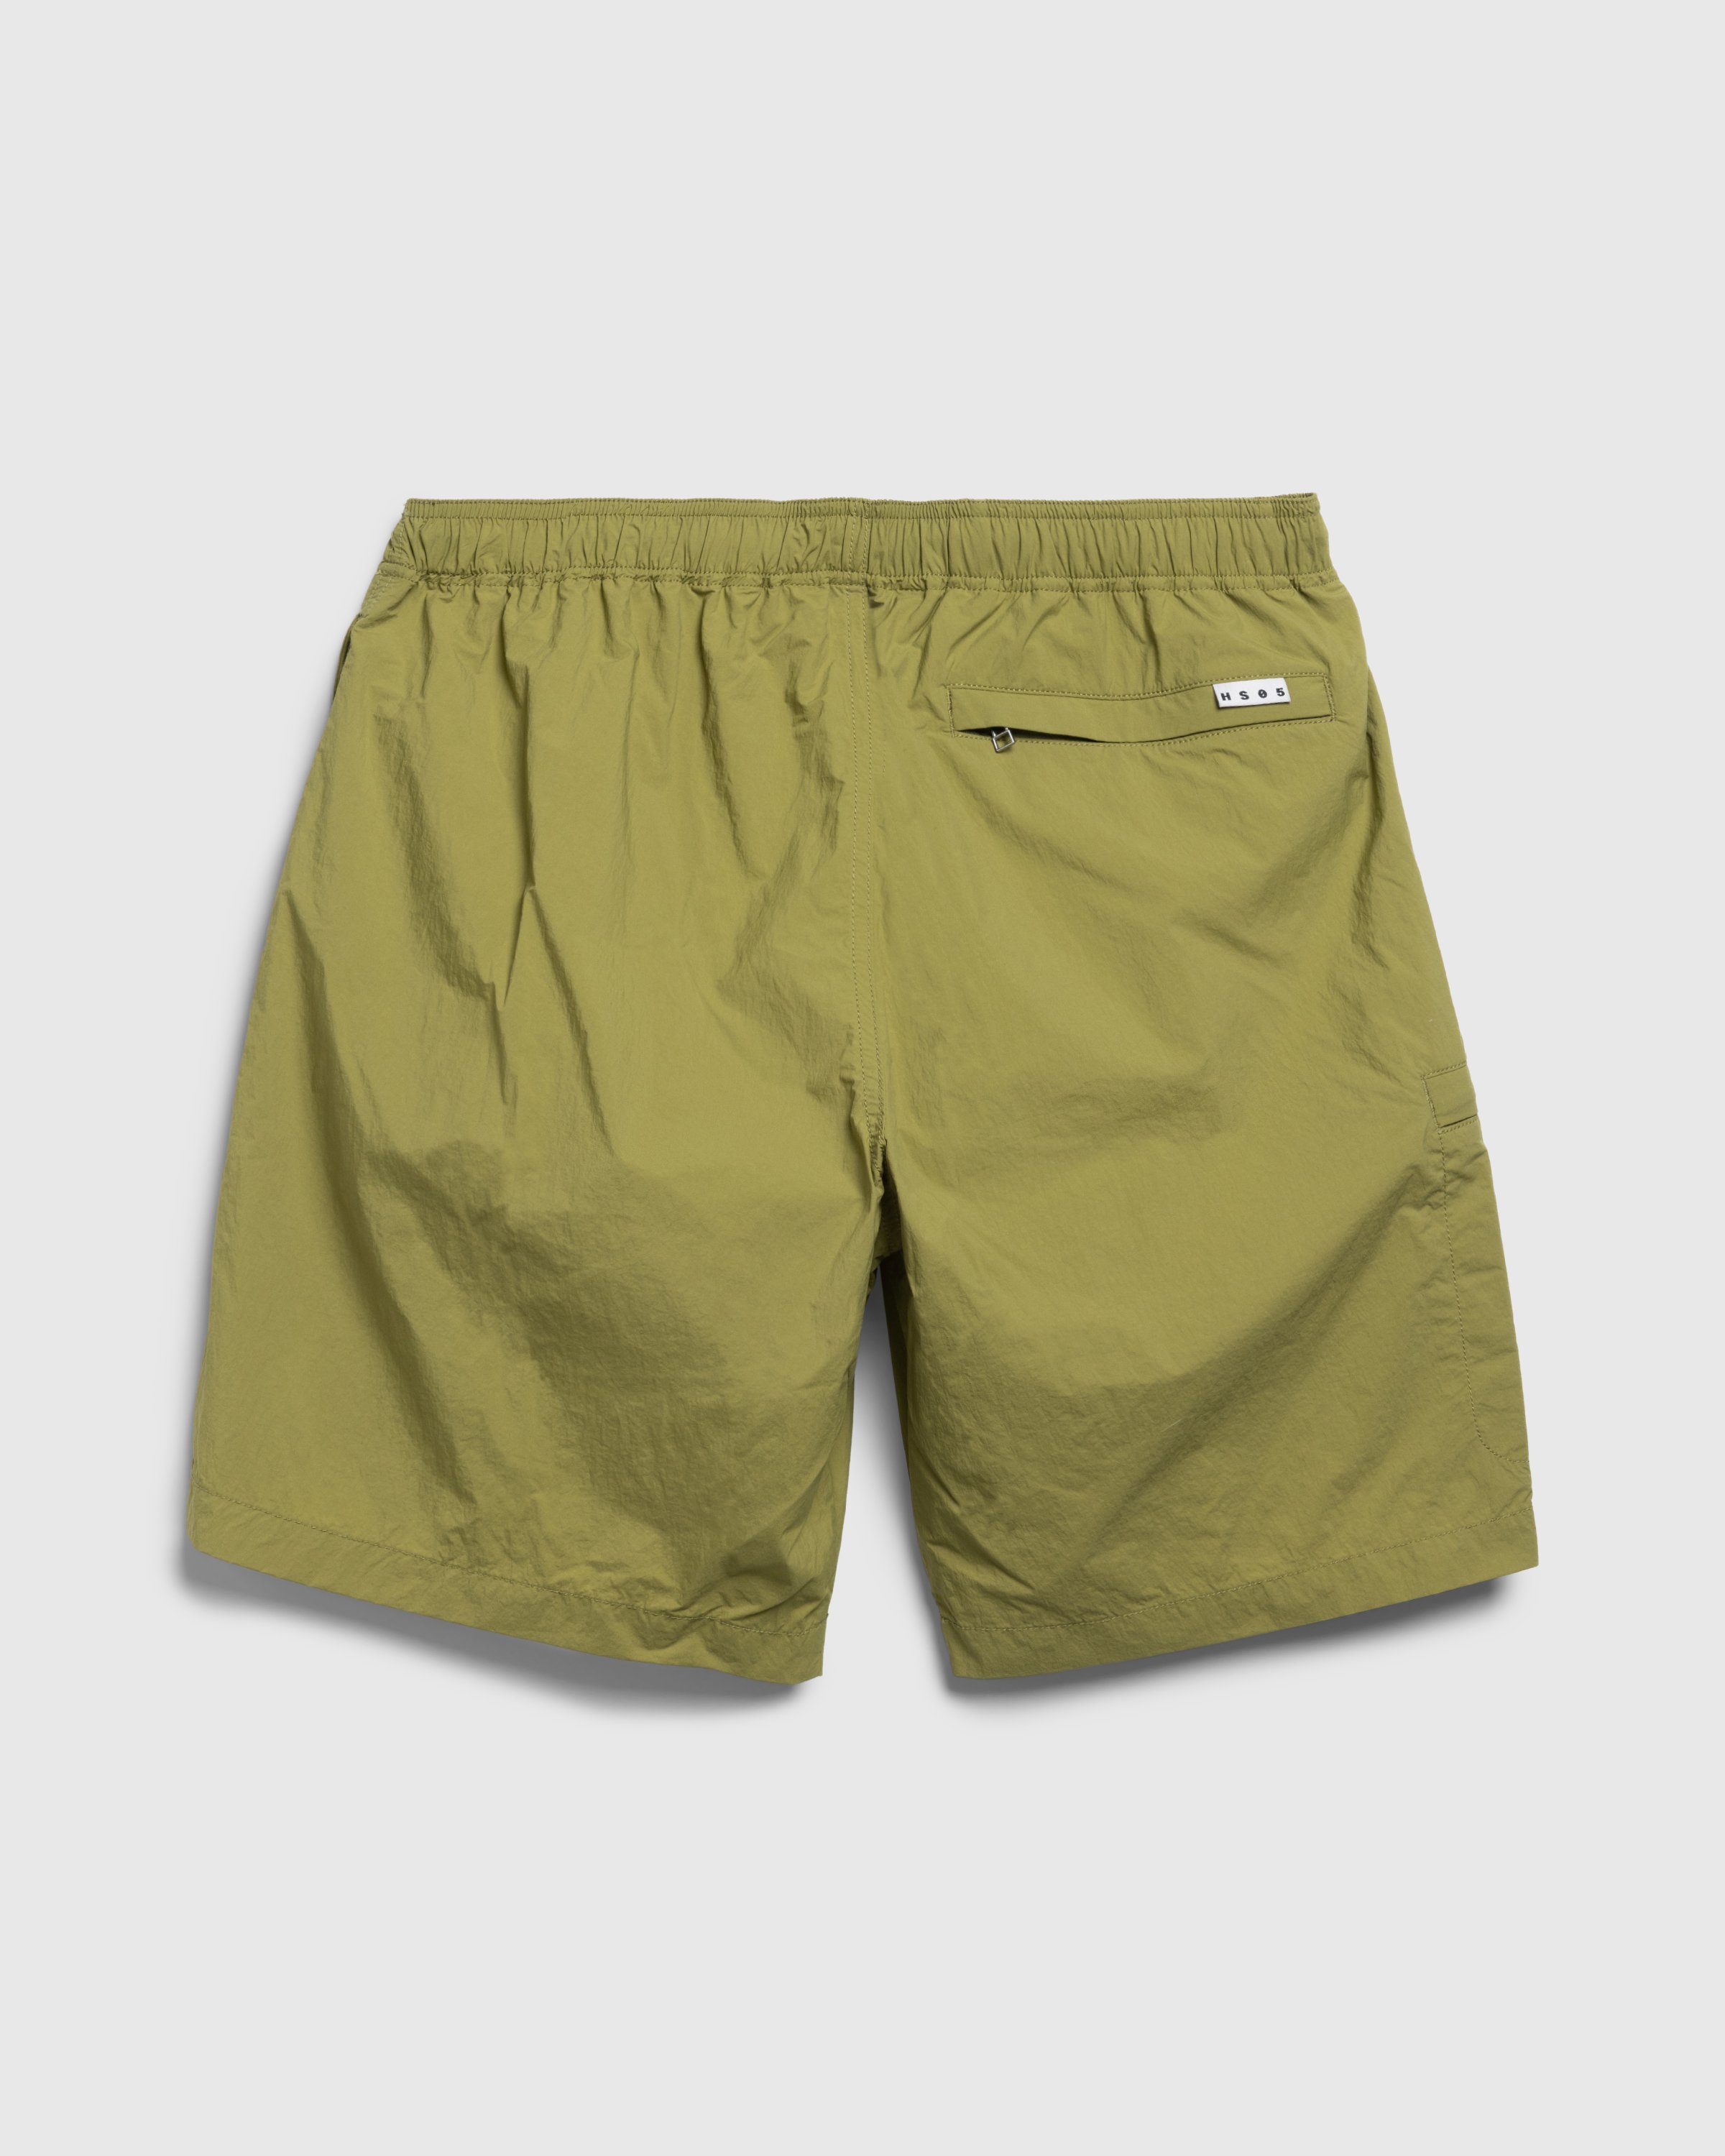 Highsnobiety HS05 - Natural Dyed Nylon Shorts - Clothing - Khaki - Image 2